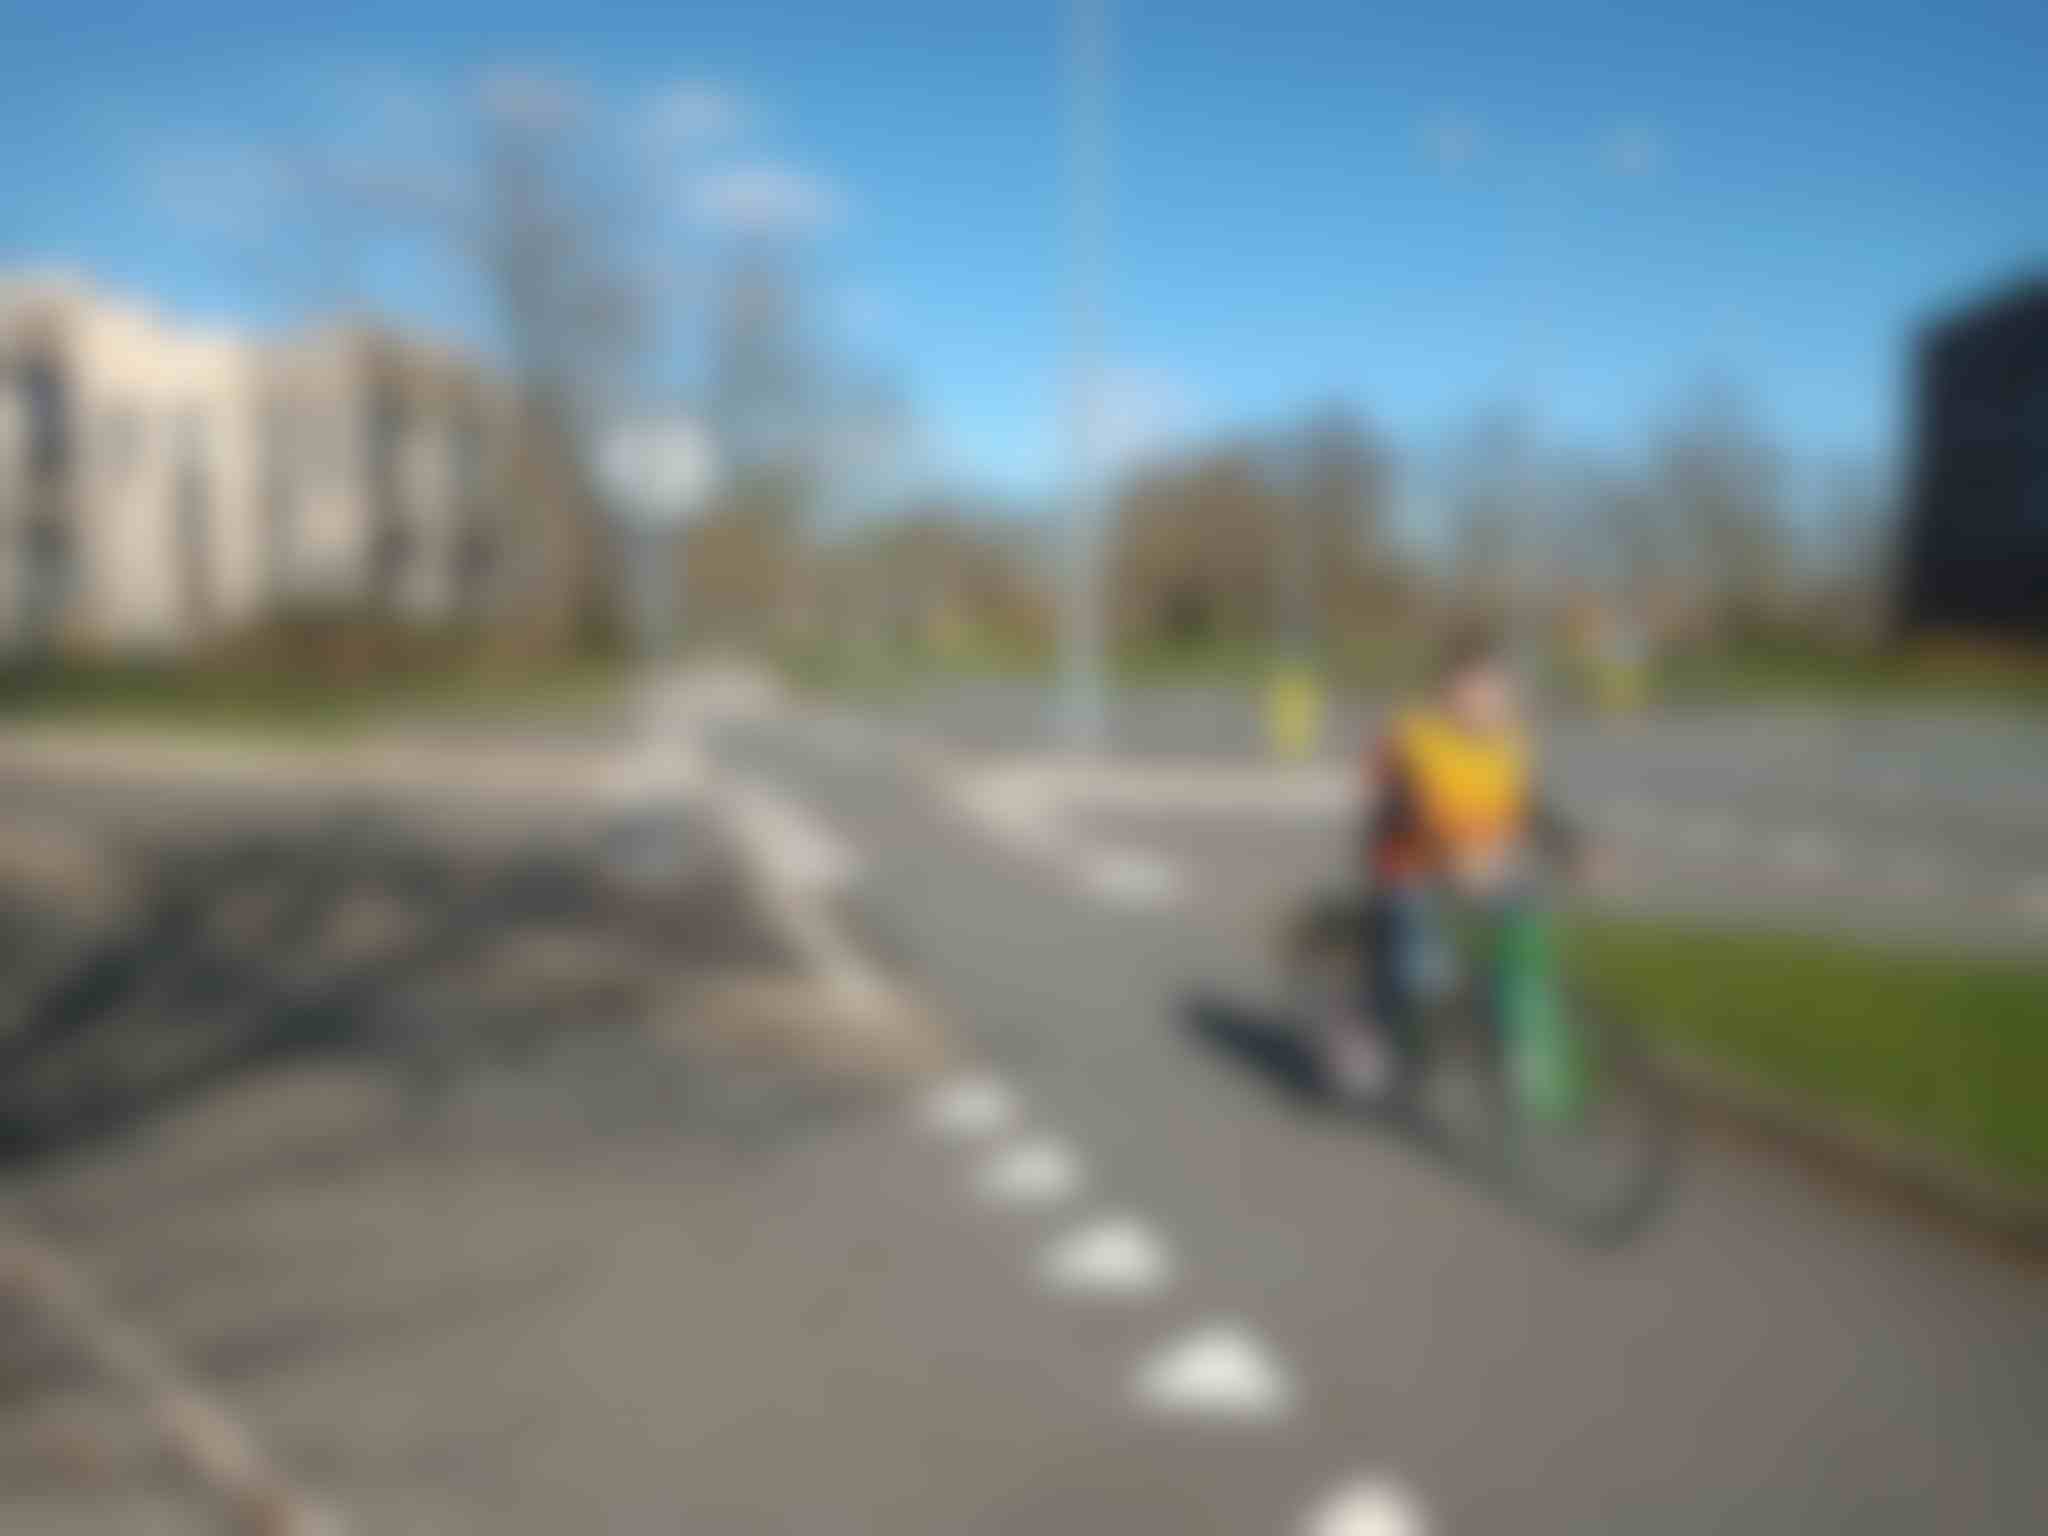 Zorg jij ervoor dat kinderen hun fietsexamen kunnen doen?